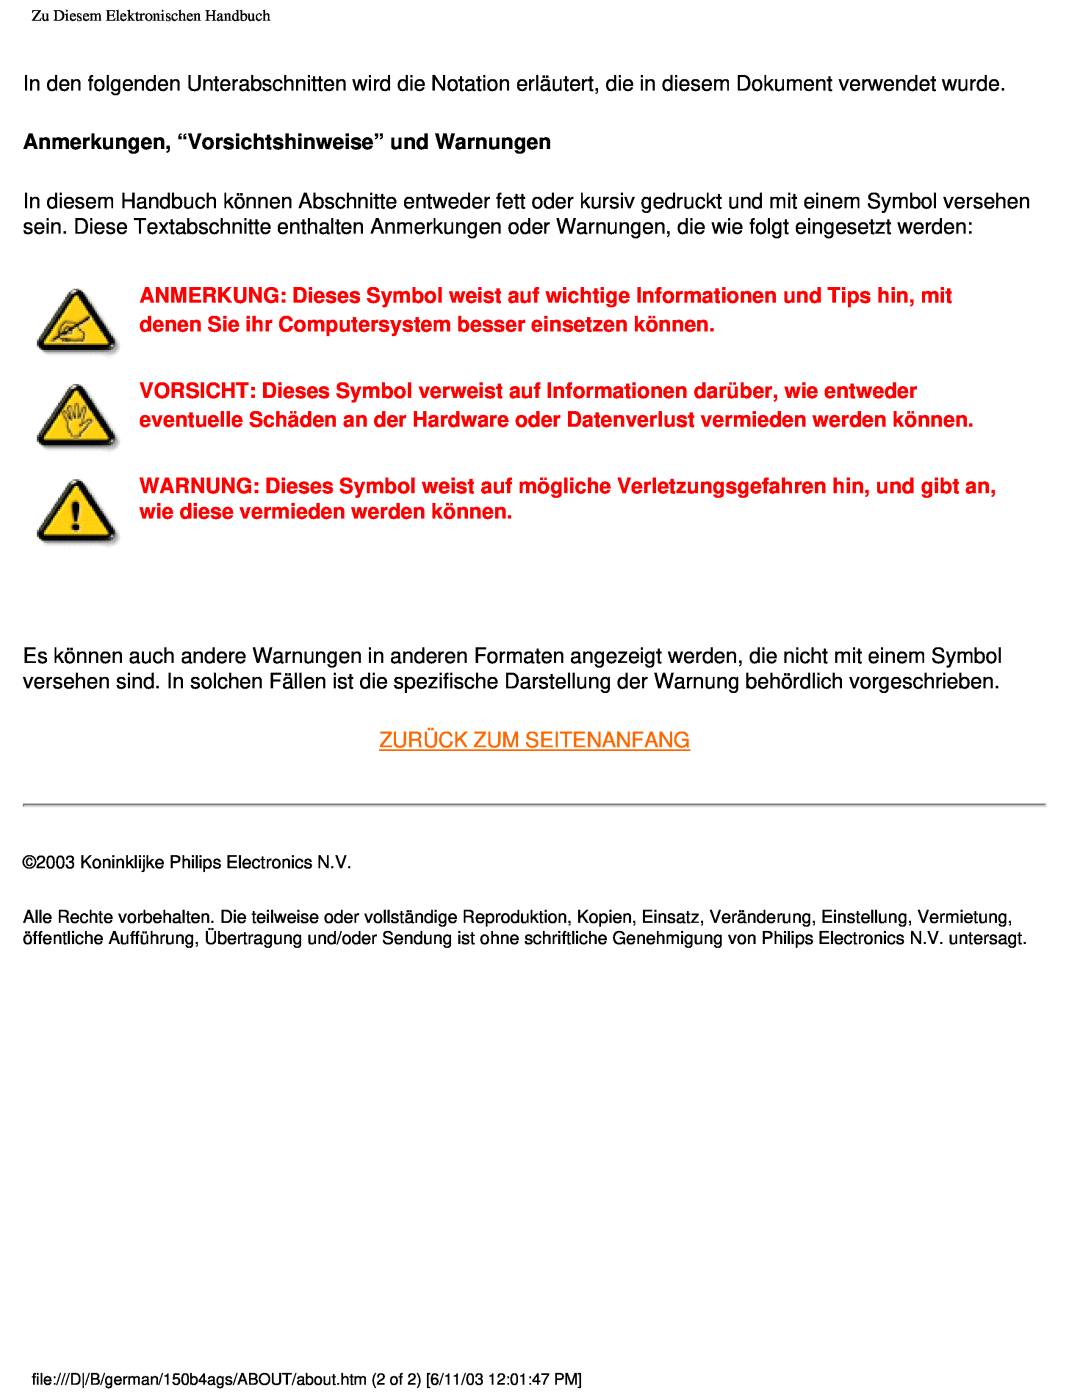 Philips 150B4AG user manual Anmerkungen, “Vorsichtshinweise” und Warnungen, Zurück Zum Seitenanfang 